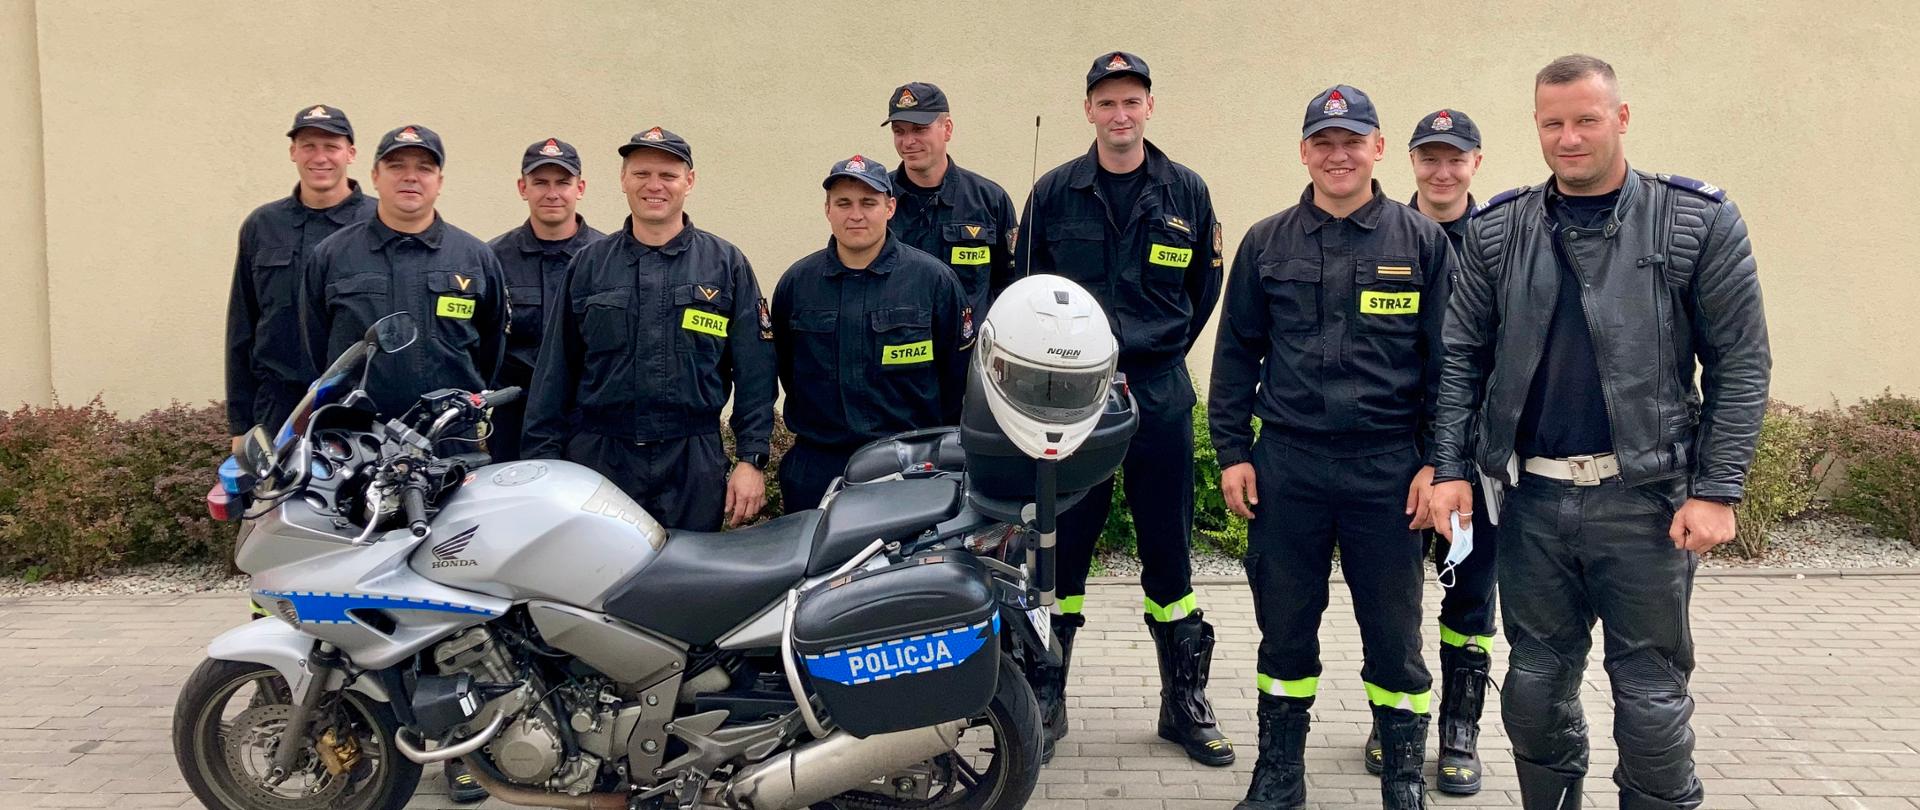 Zdjęcie przedstawia uczestników szkolenia, prowadzącego, motocykl policyjny